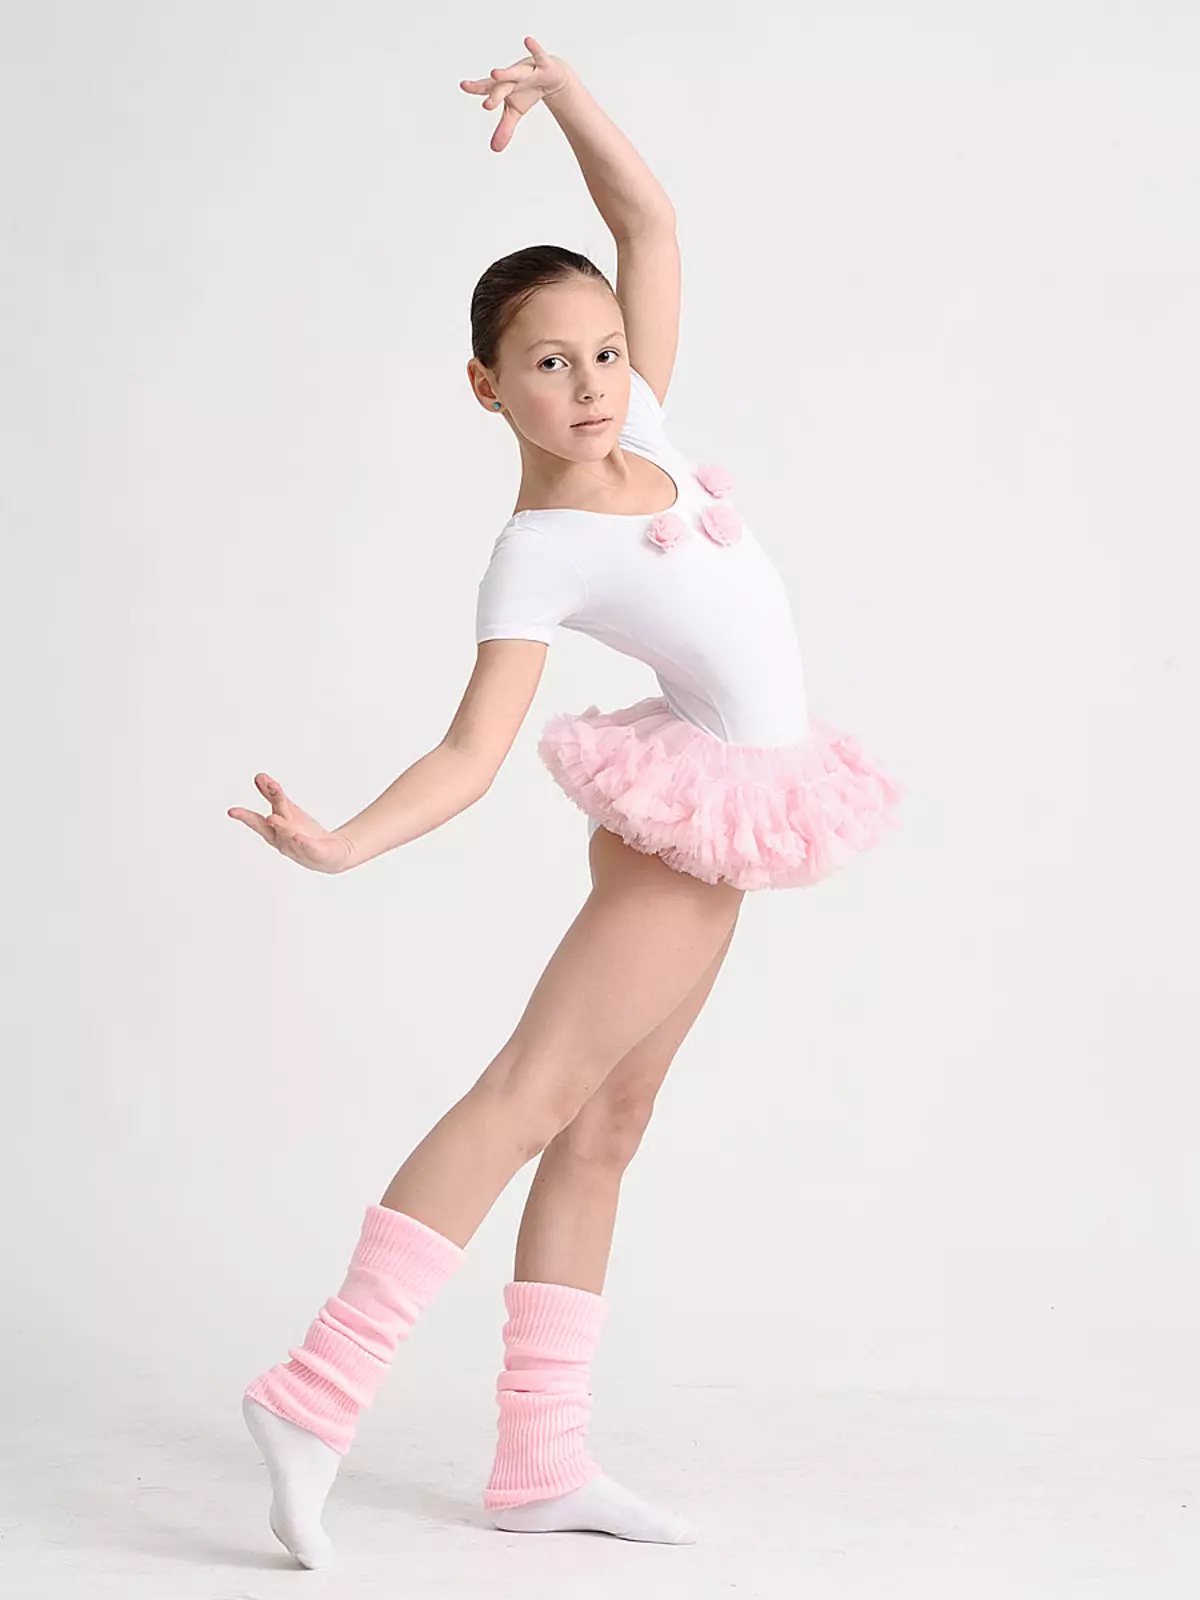 Swimsuit das crianças para dançar com saia (45 fotos): modelos de dança para meninas 13495_2